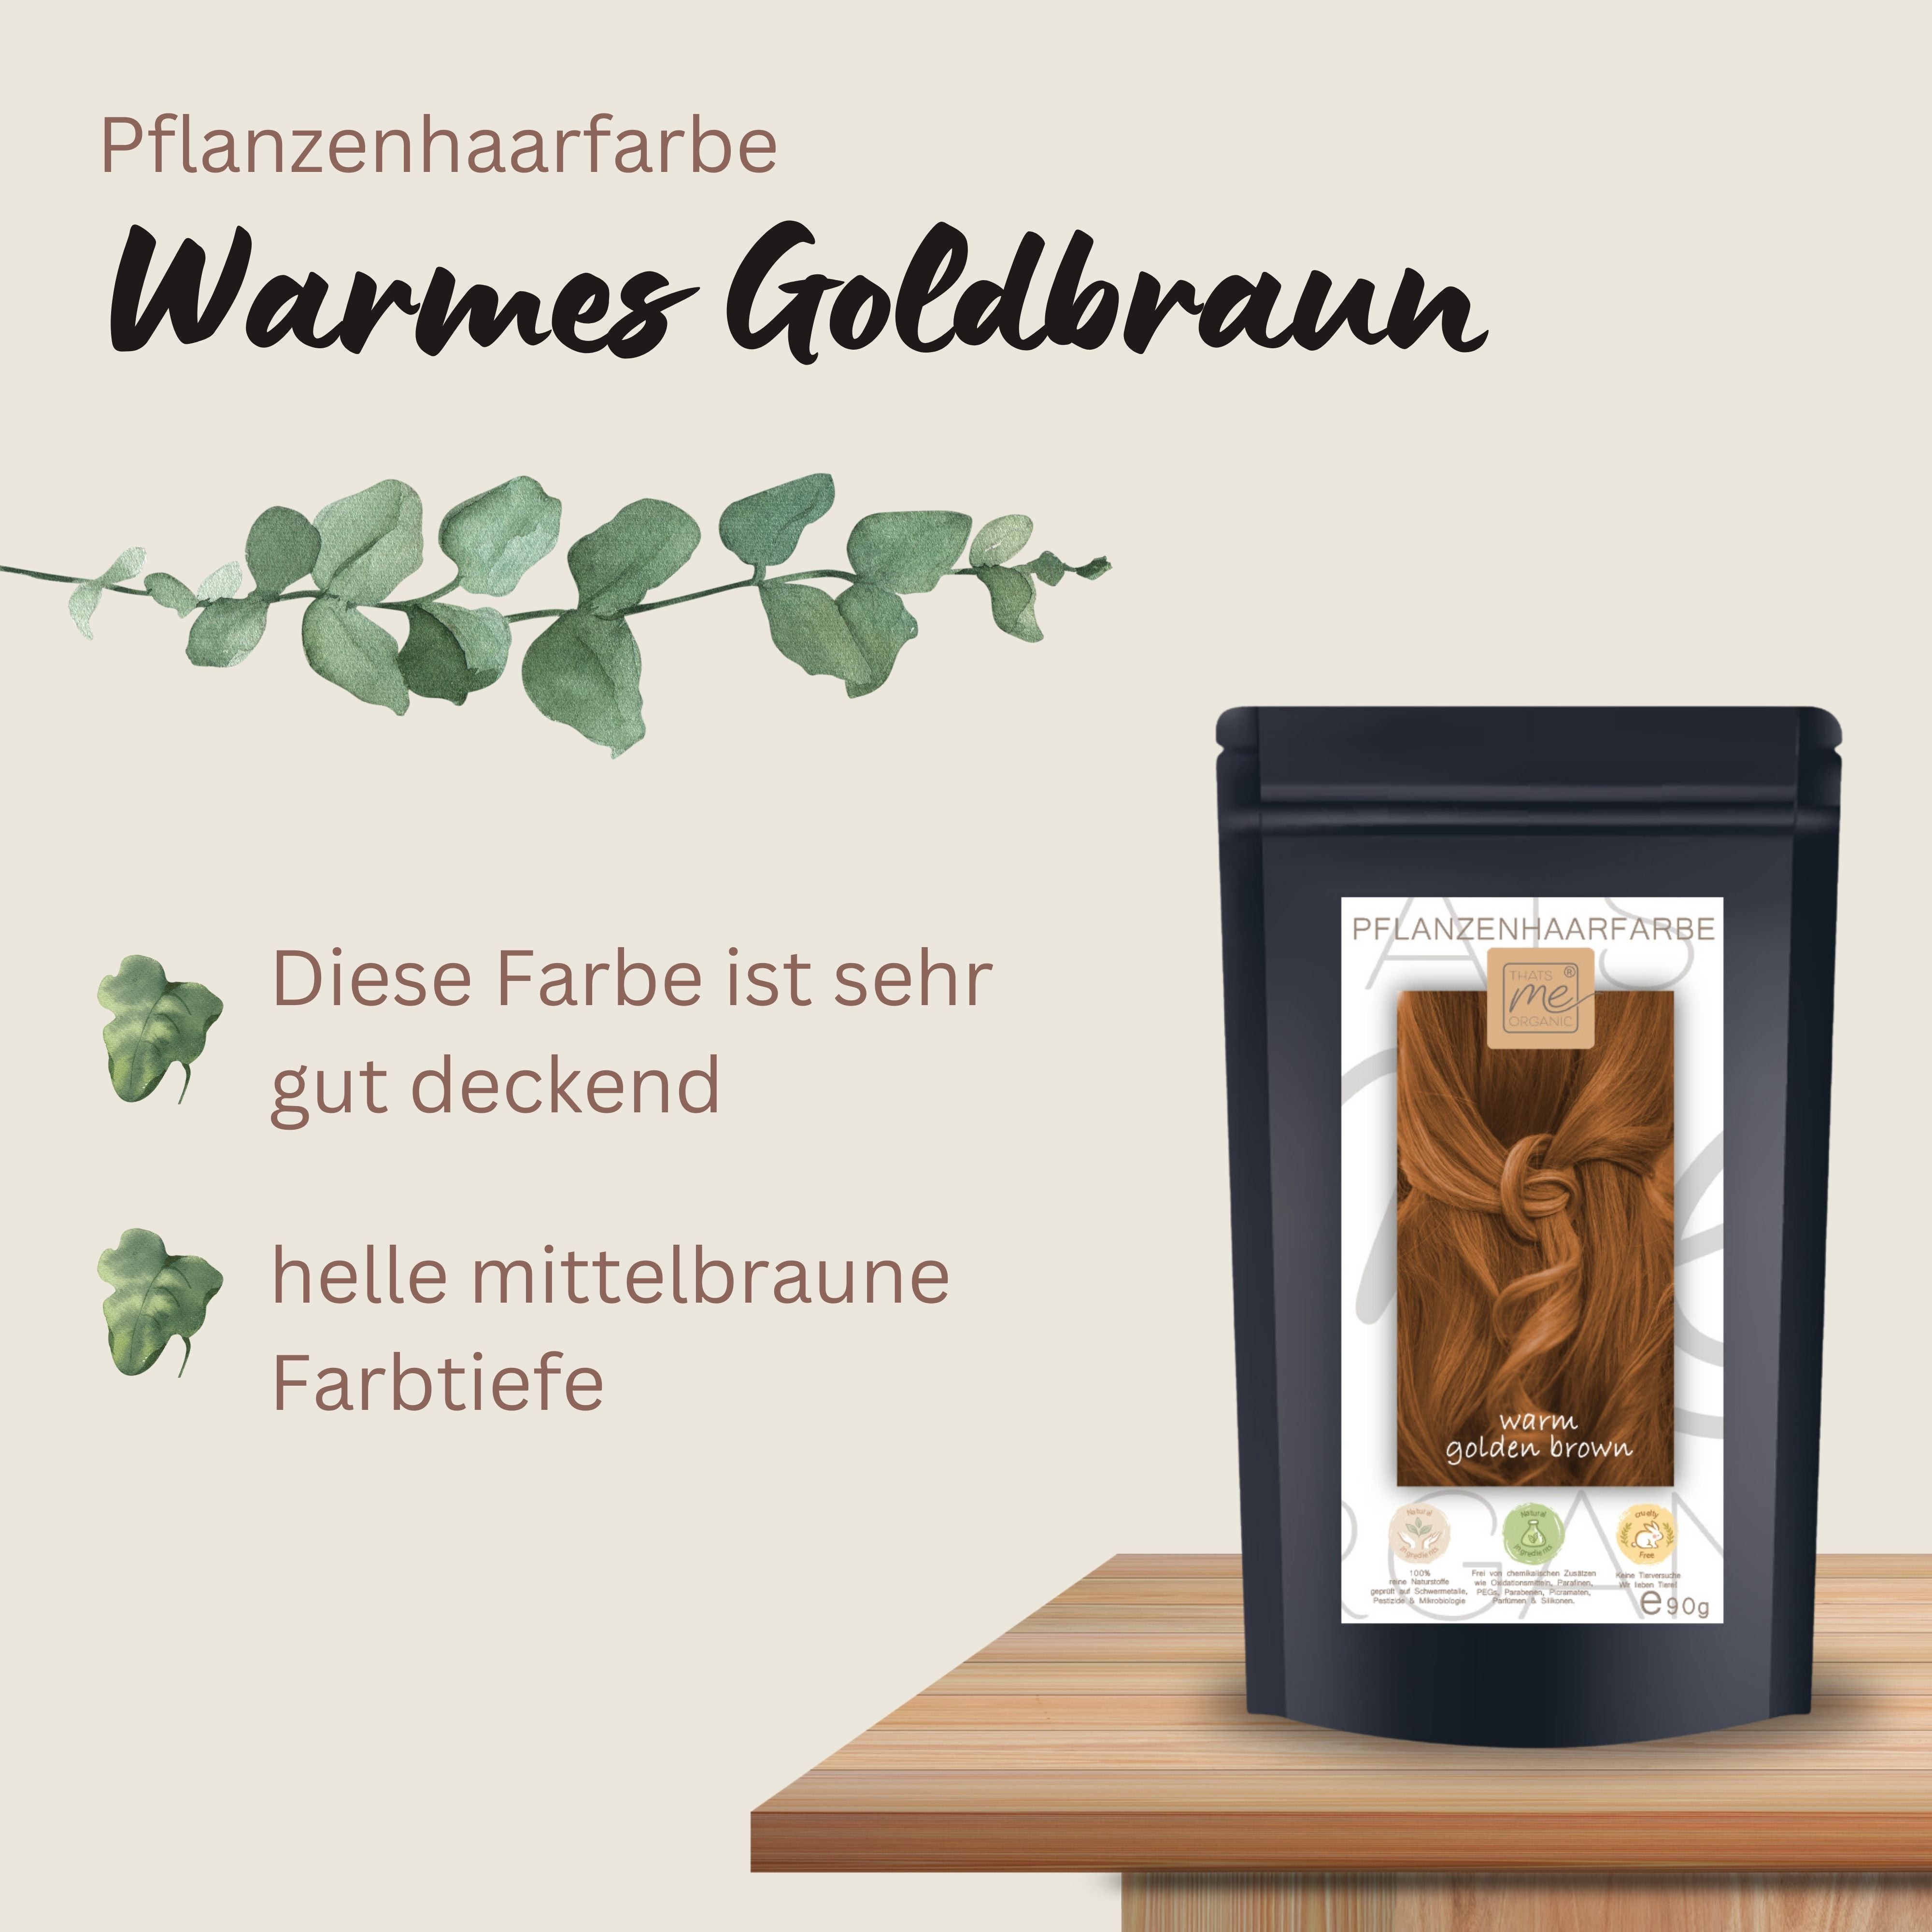 Profi-Pflanzenhaarfarbe warmes Gold-Braun "warm golden brown" 90g Nachfüllpack